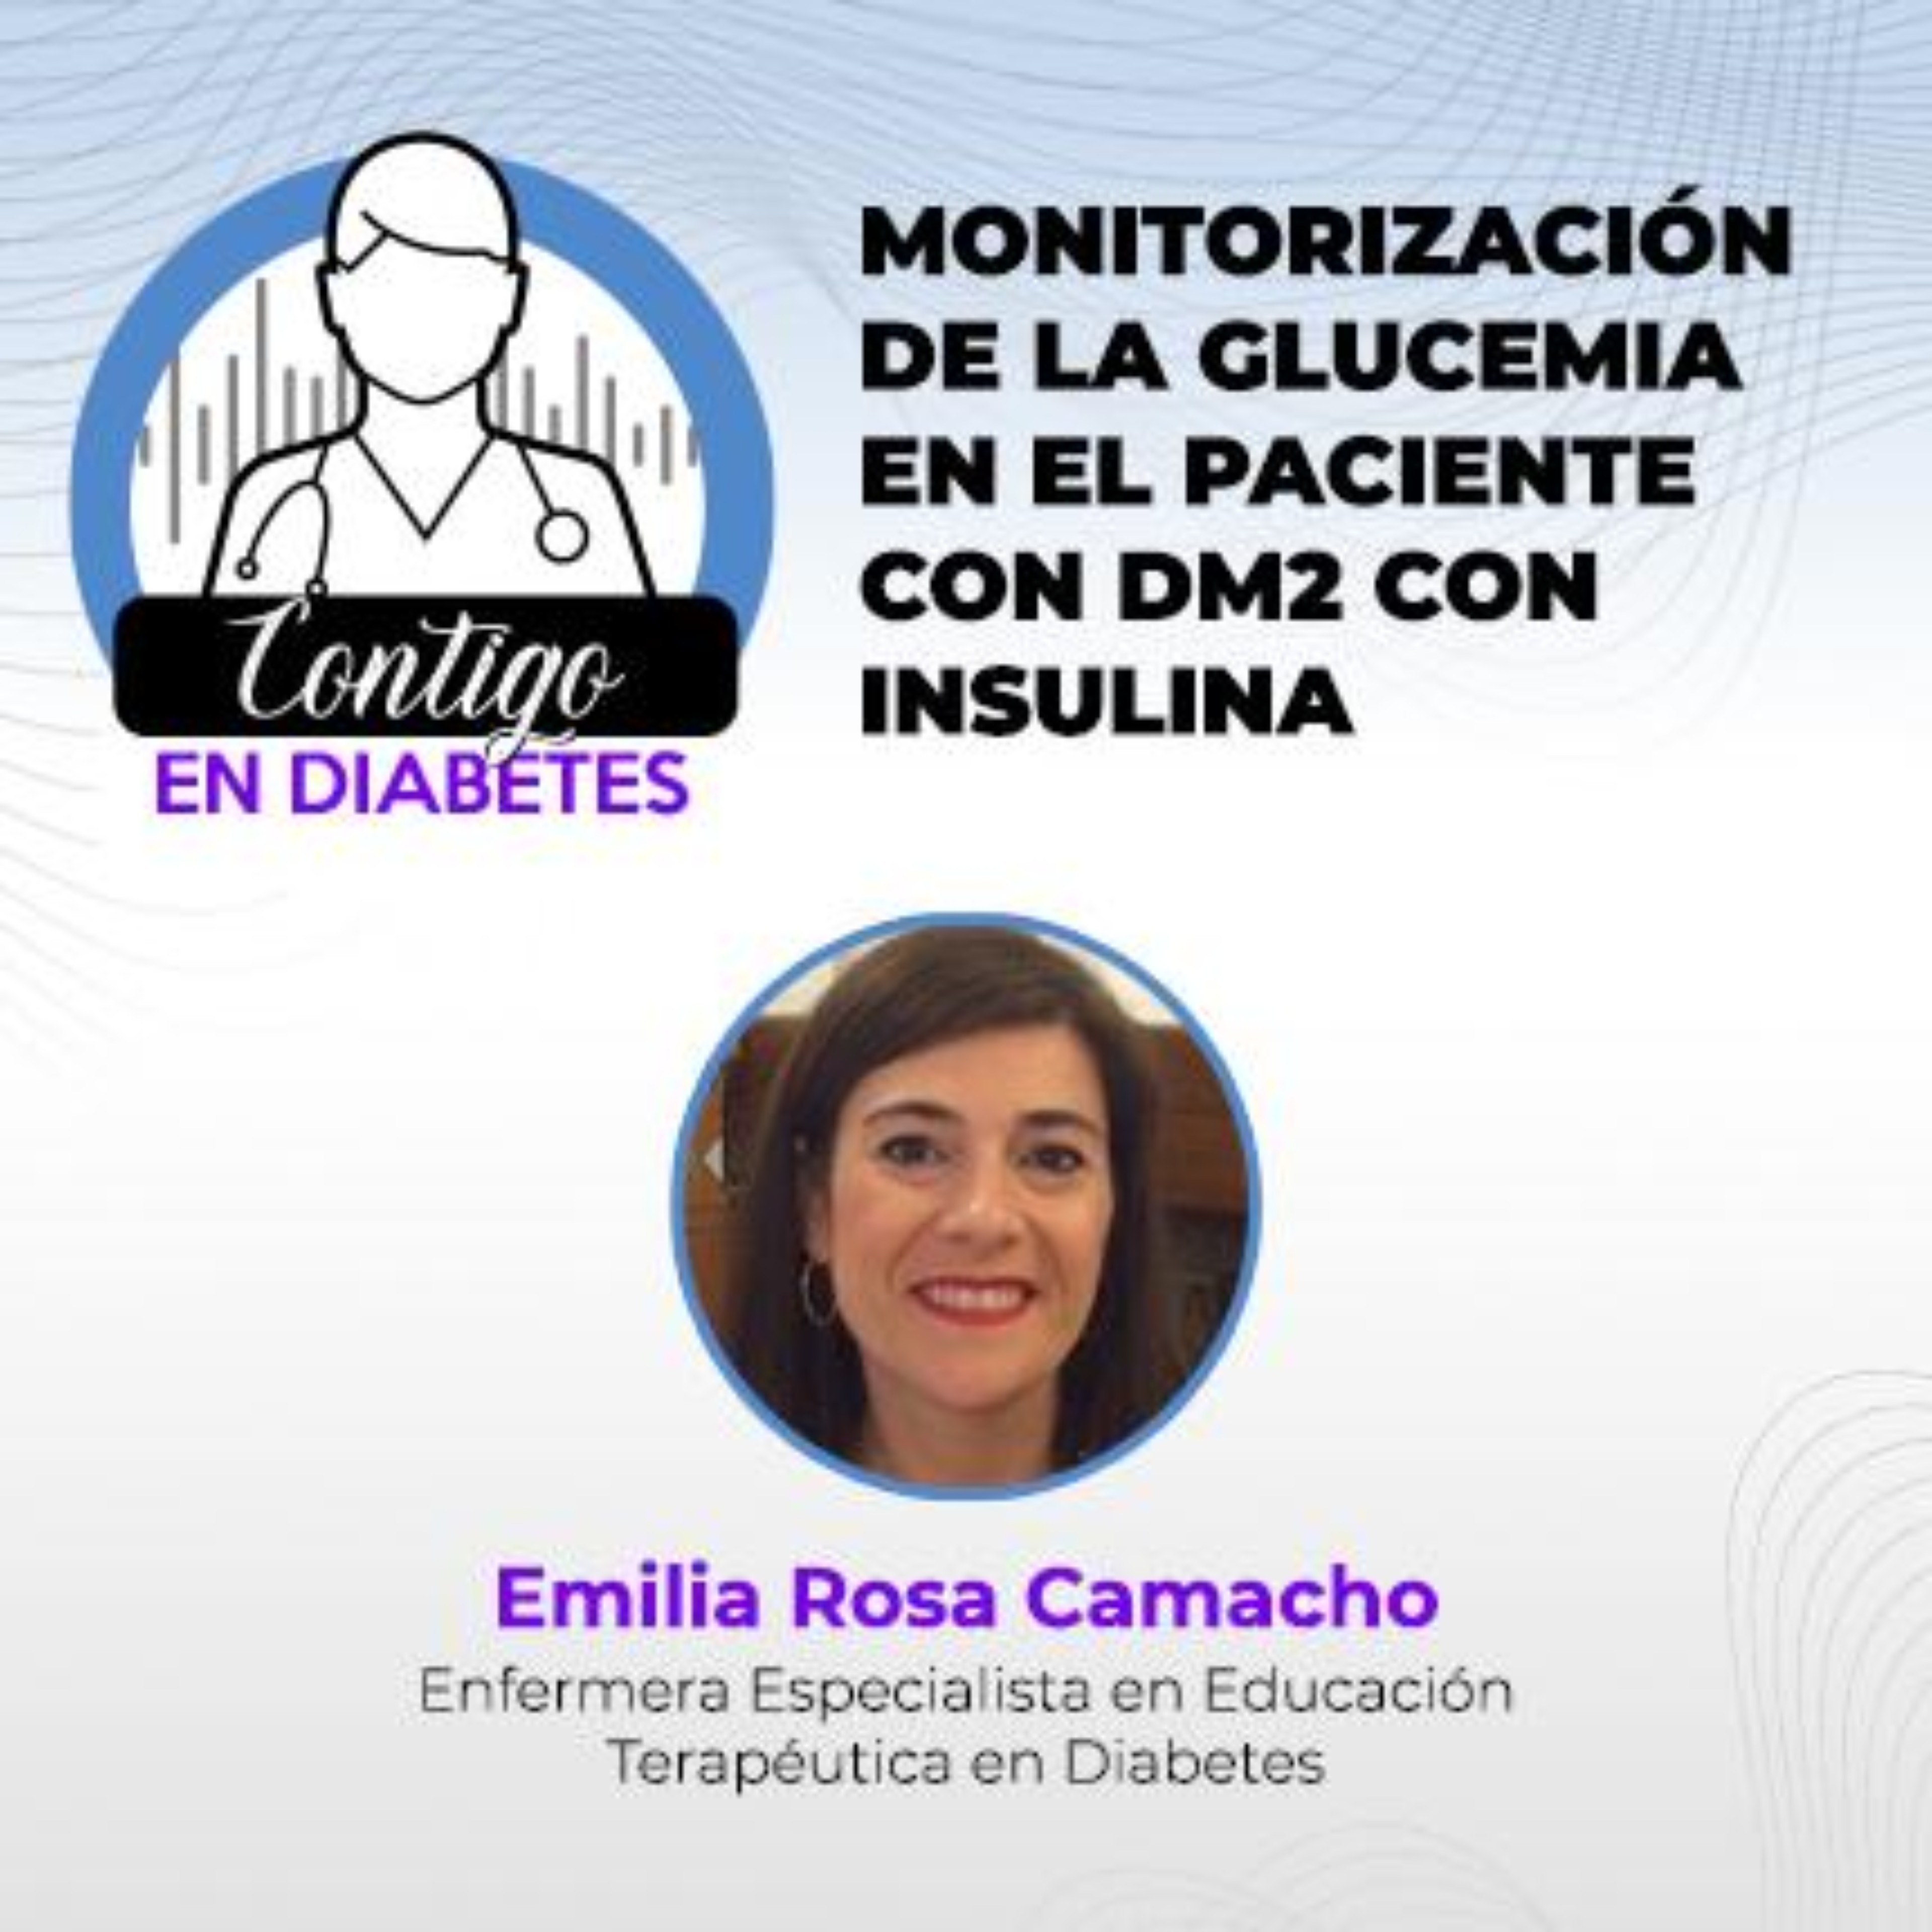 Monitorización de la glucemia en el paciente con DM2 con insulina